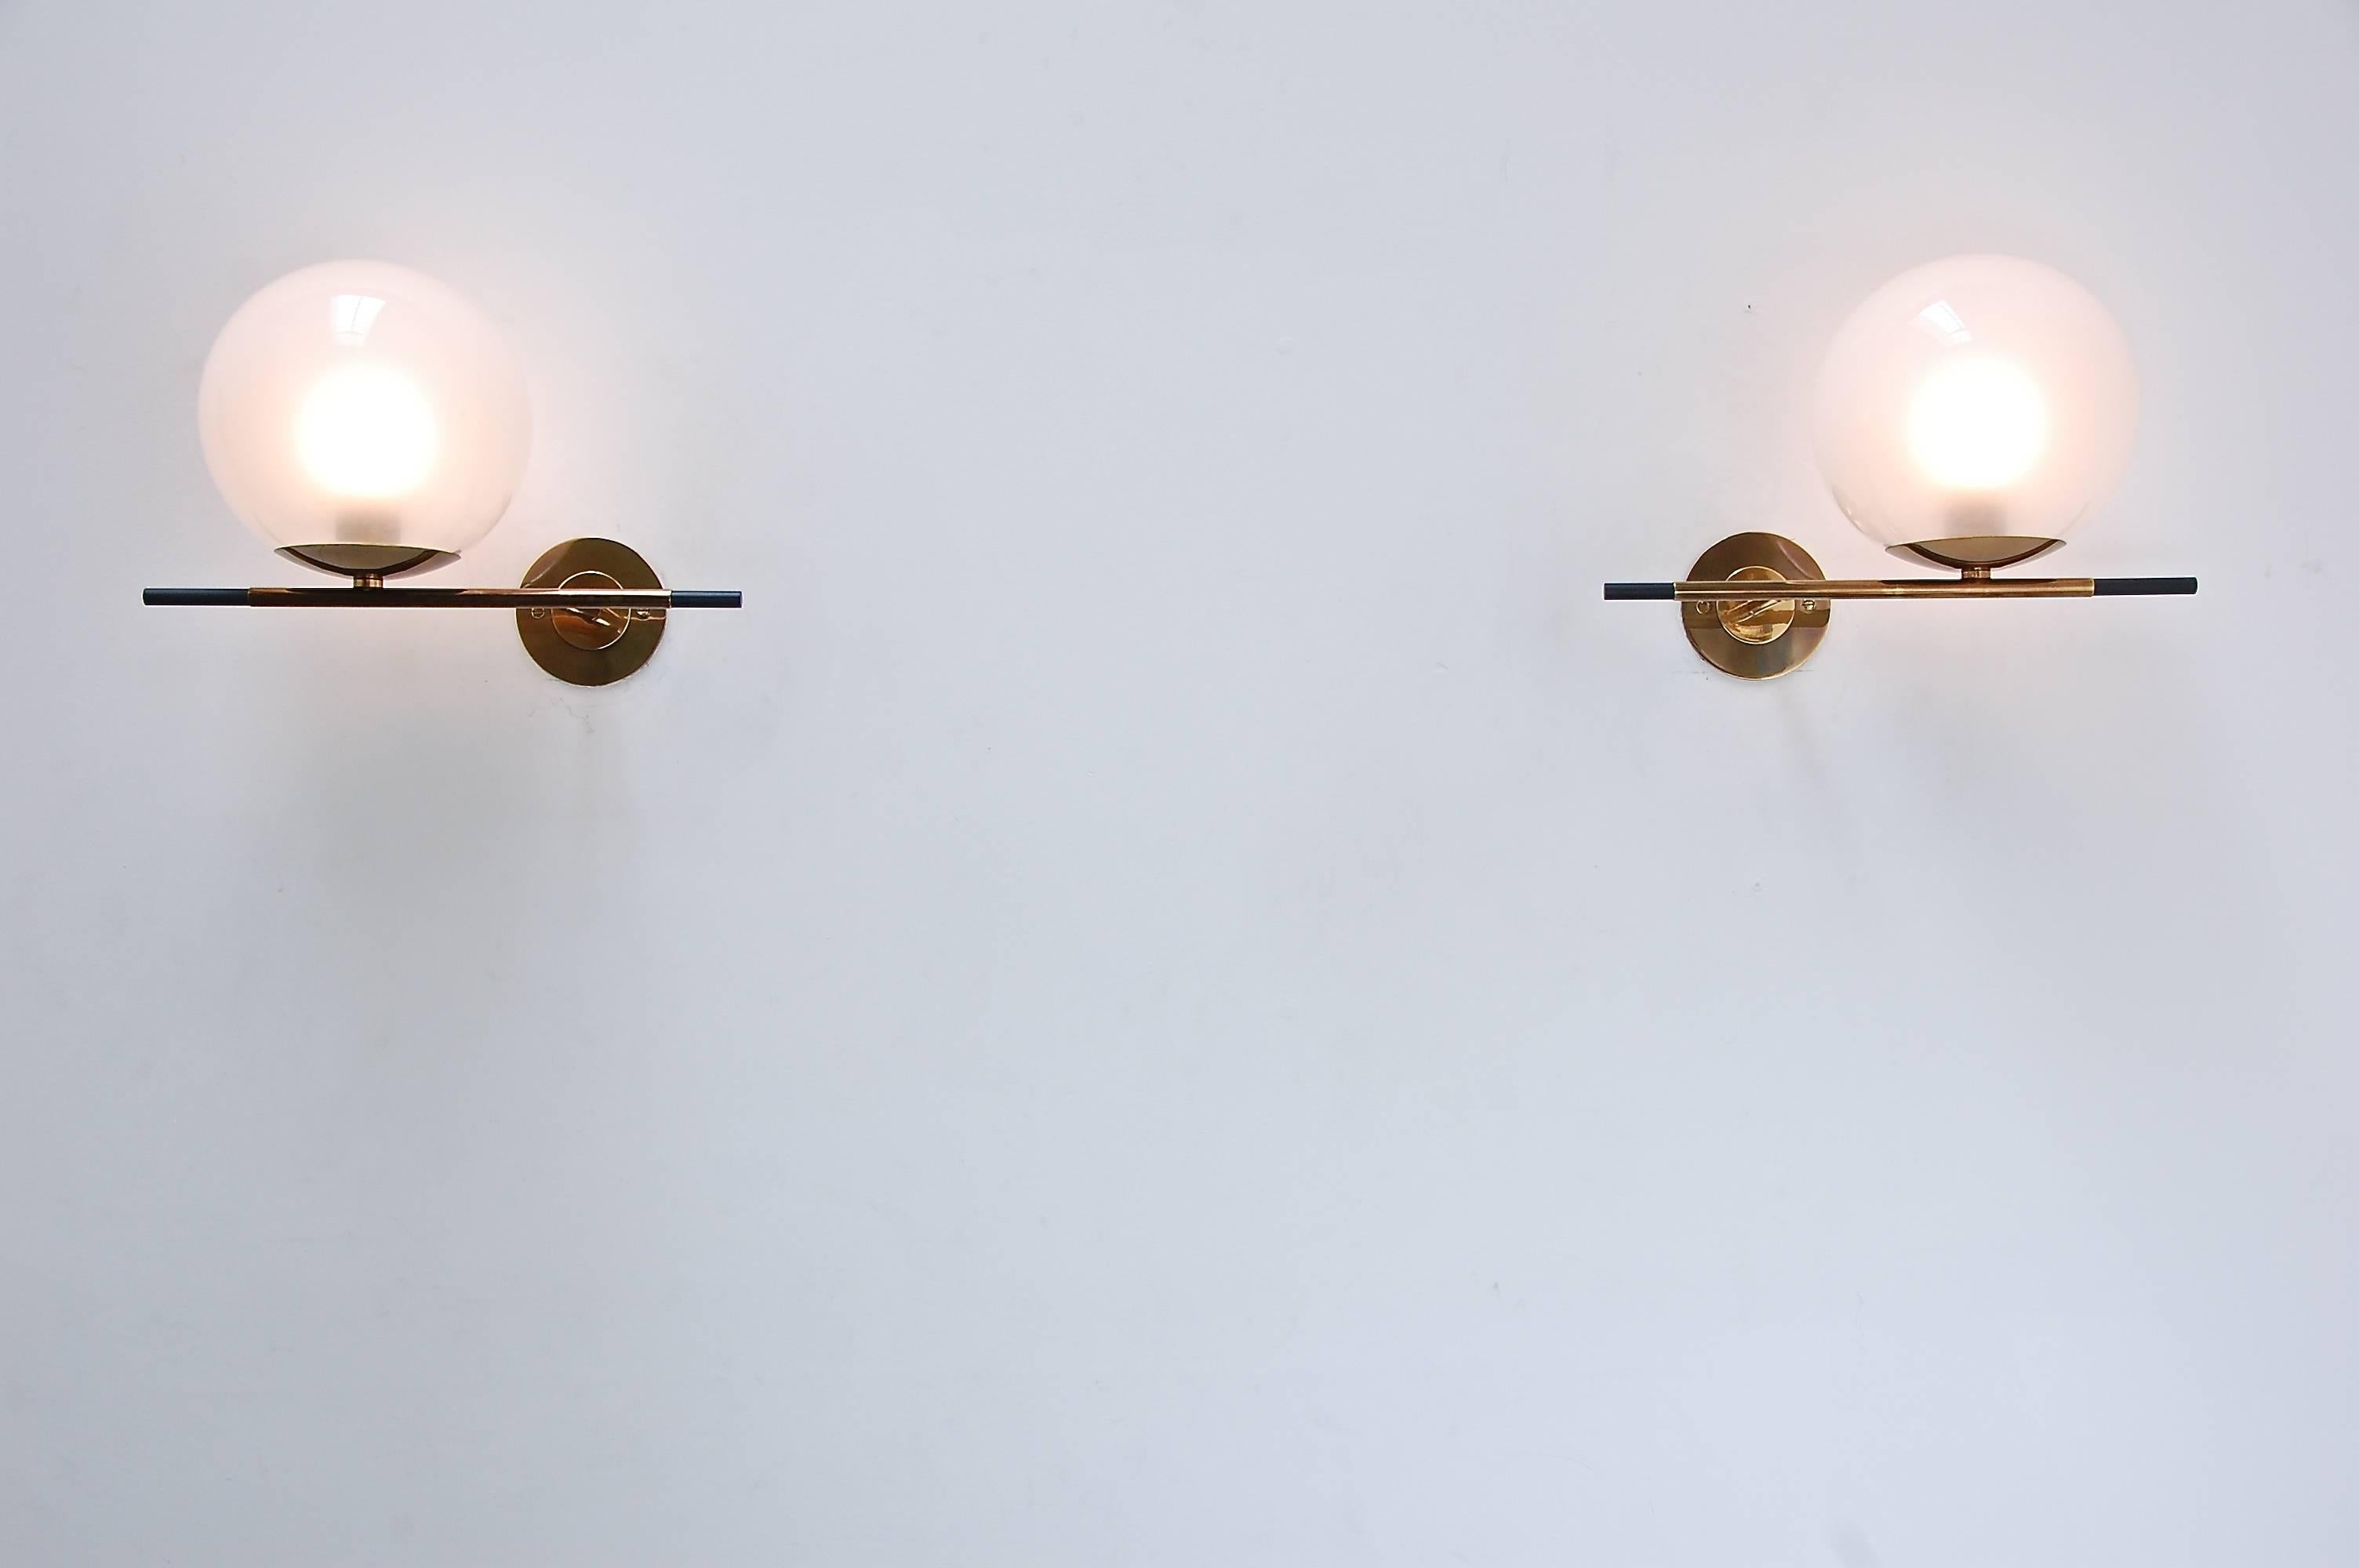 Geometrische und ikonische Globe Sconces. Diese Leuchter spielen mit dem Gleichgewicht von Gewichtswahrnehmung und Stärke und zeigen die Spannung, die durch das Rollen einer Kugel über eine Kante entsteht. Der weiche Schirm aus mundgeblasenem Glas